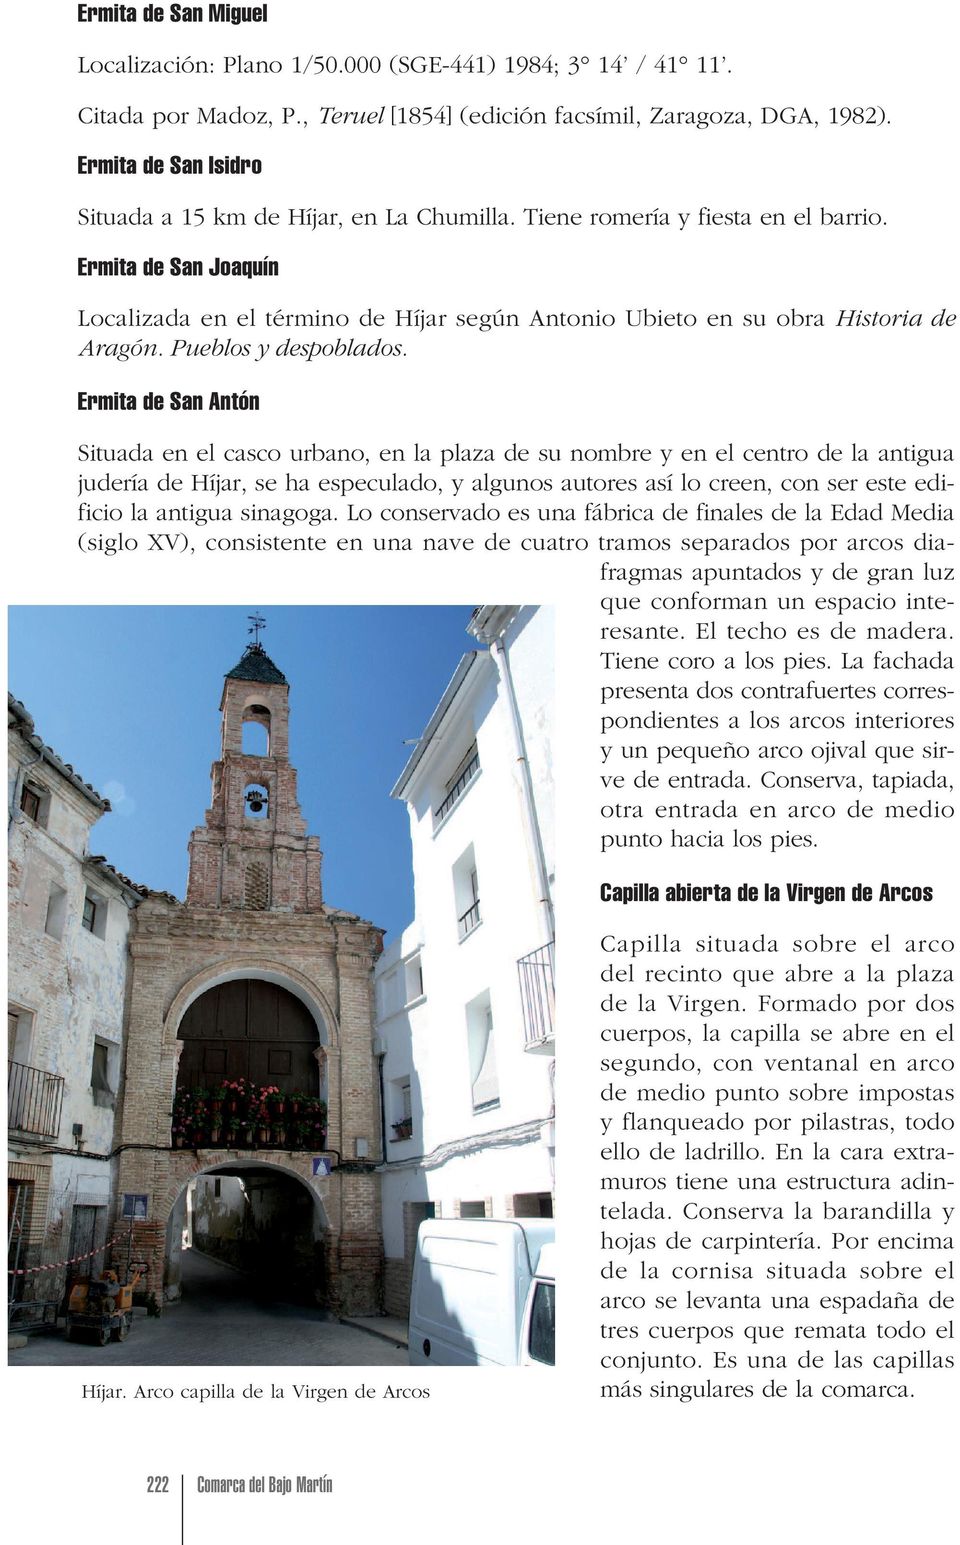 Ermita de San Joaquín Localizada en el término de Híjar según Antonio Ubieto en su obra Historia de Aragón. Pueblos y despoblados.